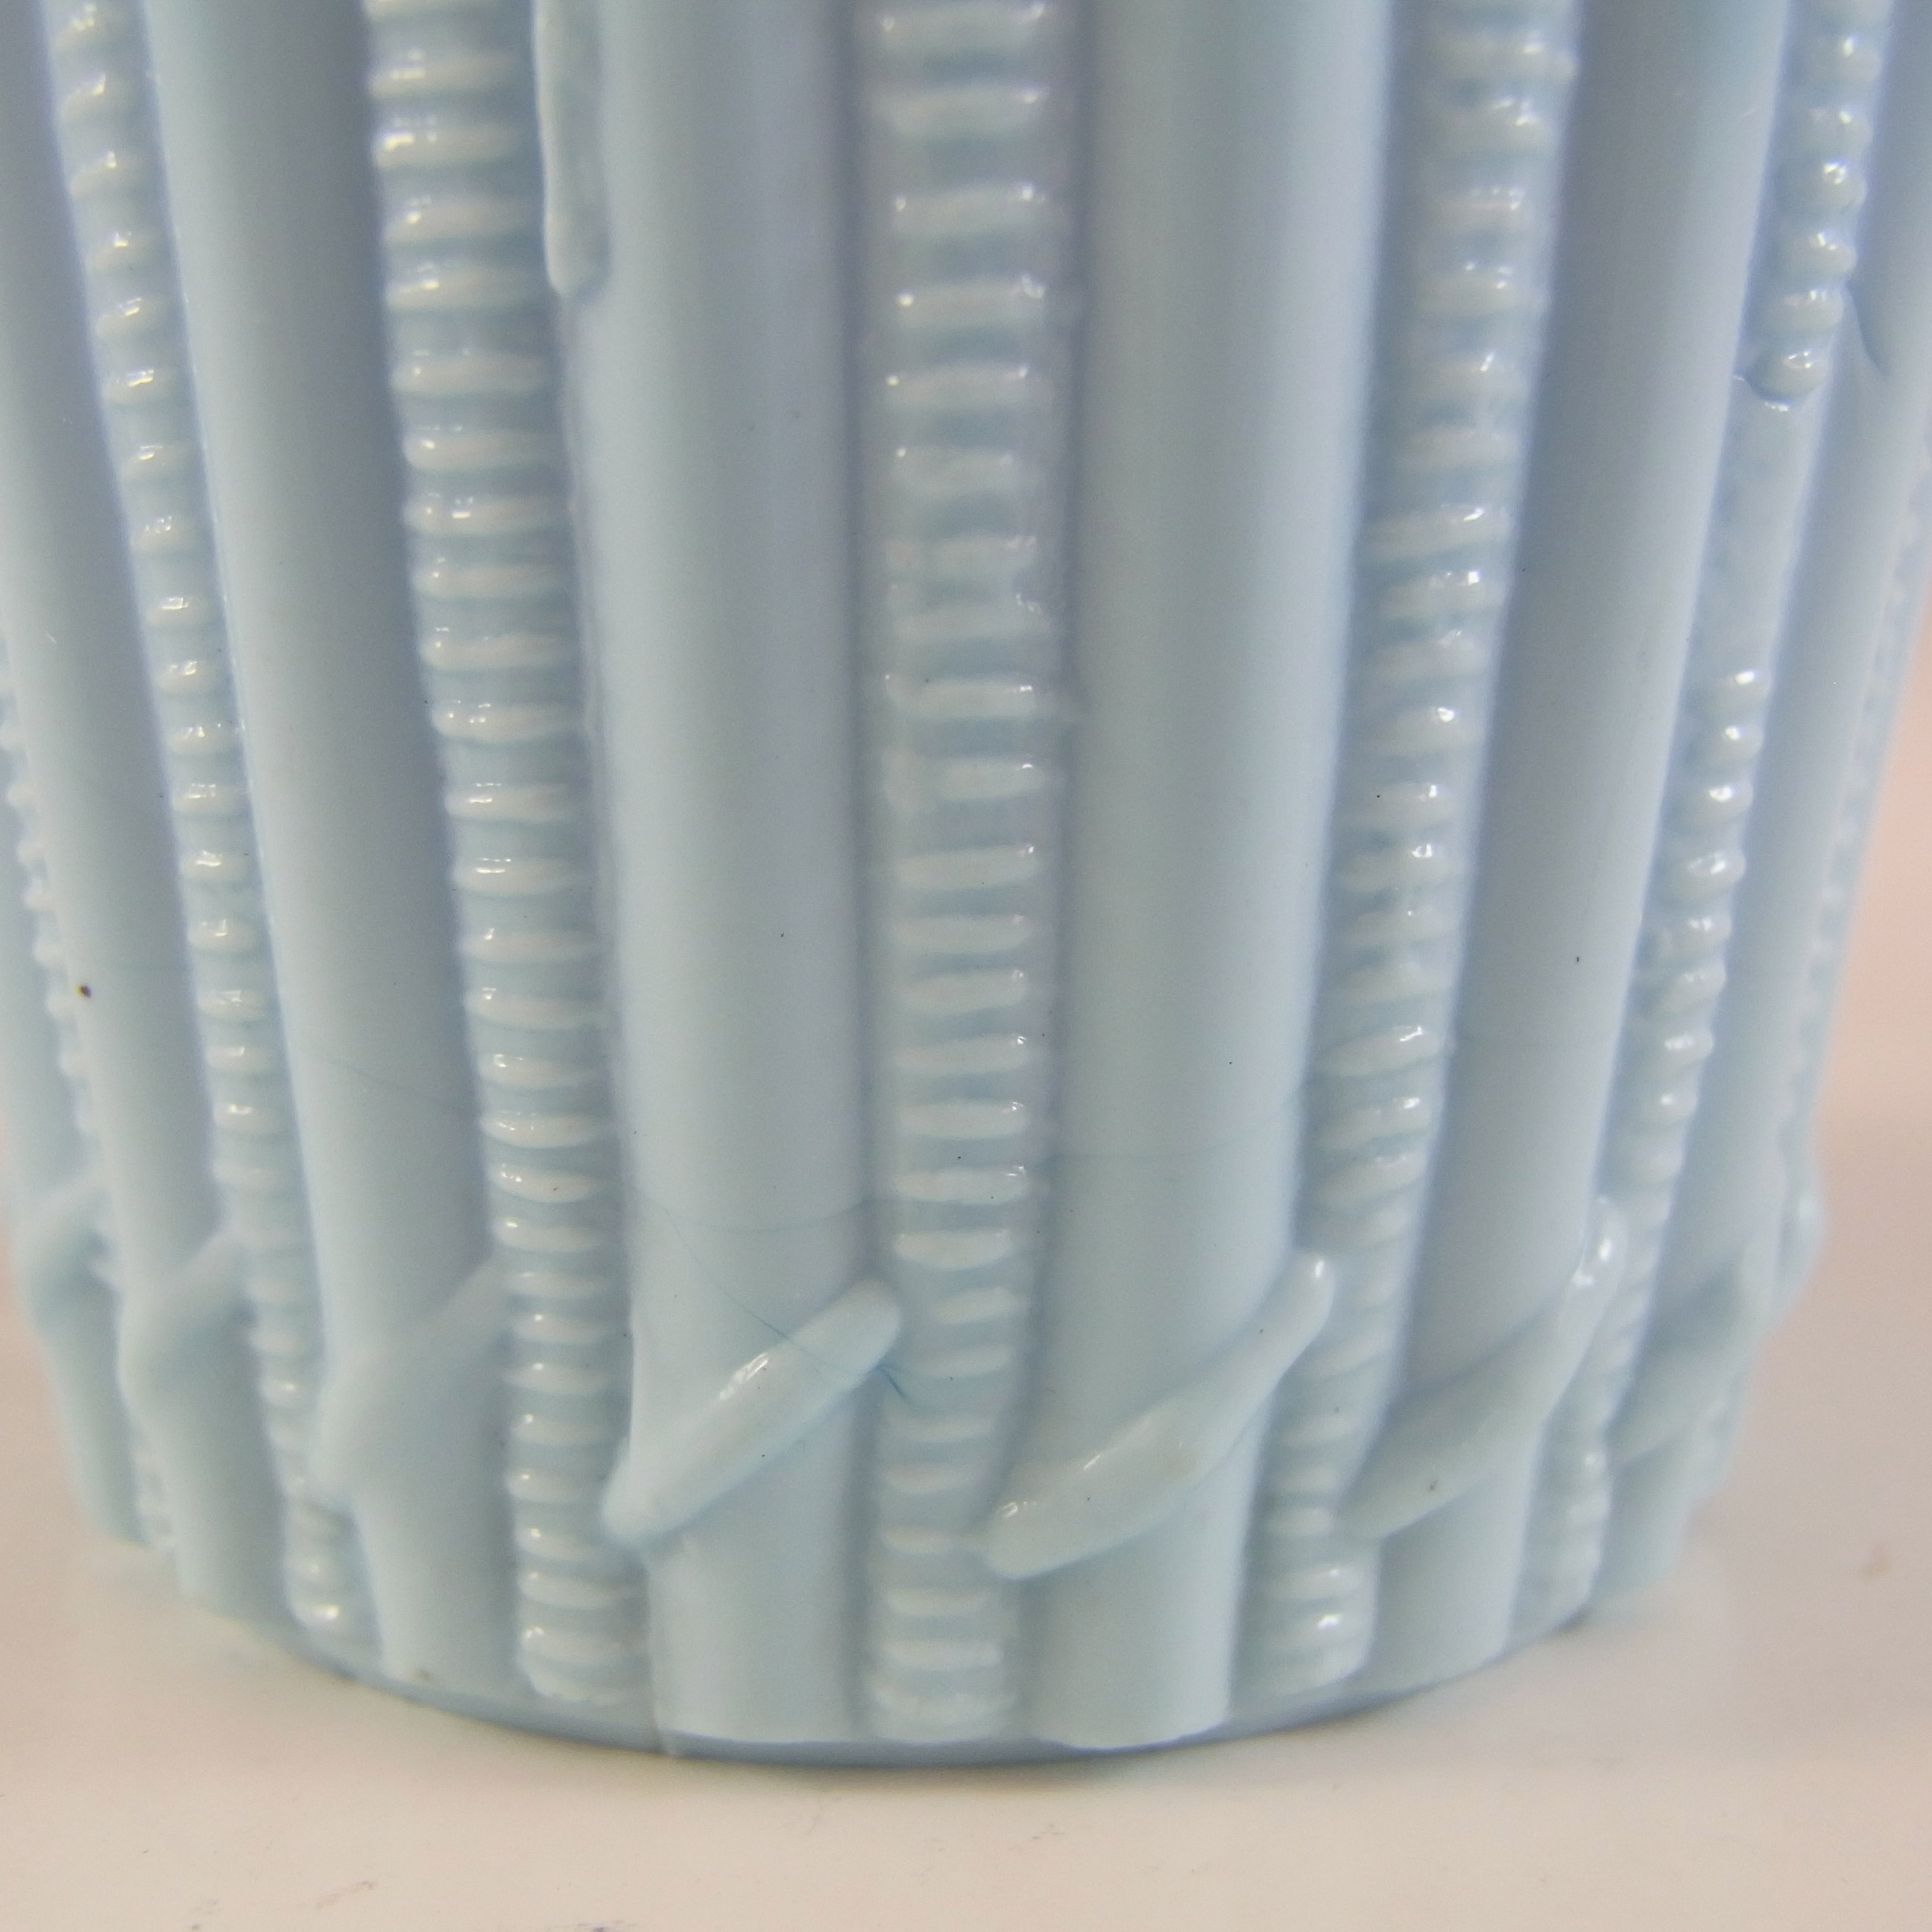 Victorian Blue Vitro-Porcelain / Milk Glass Antique Basket Bowl - Click Image to Close